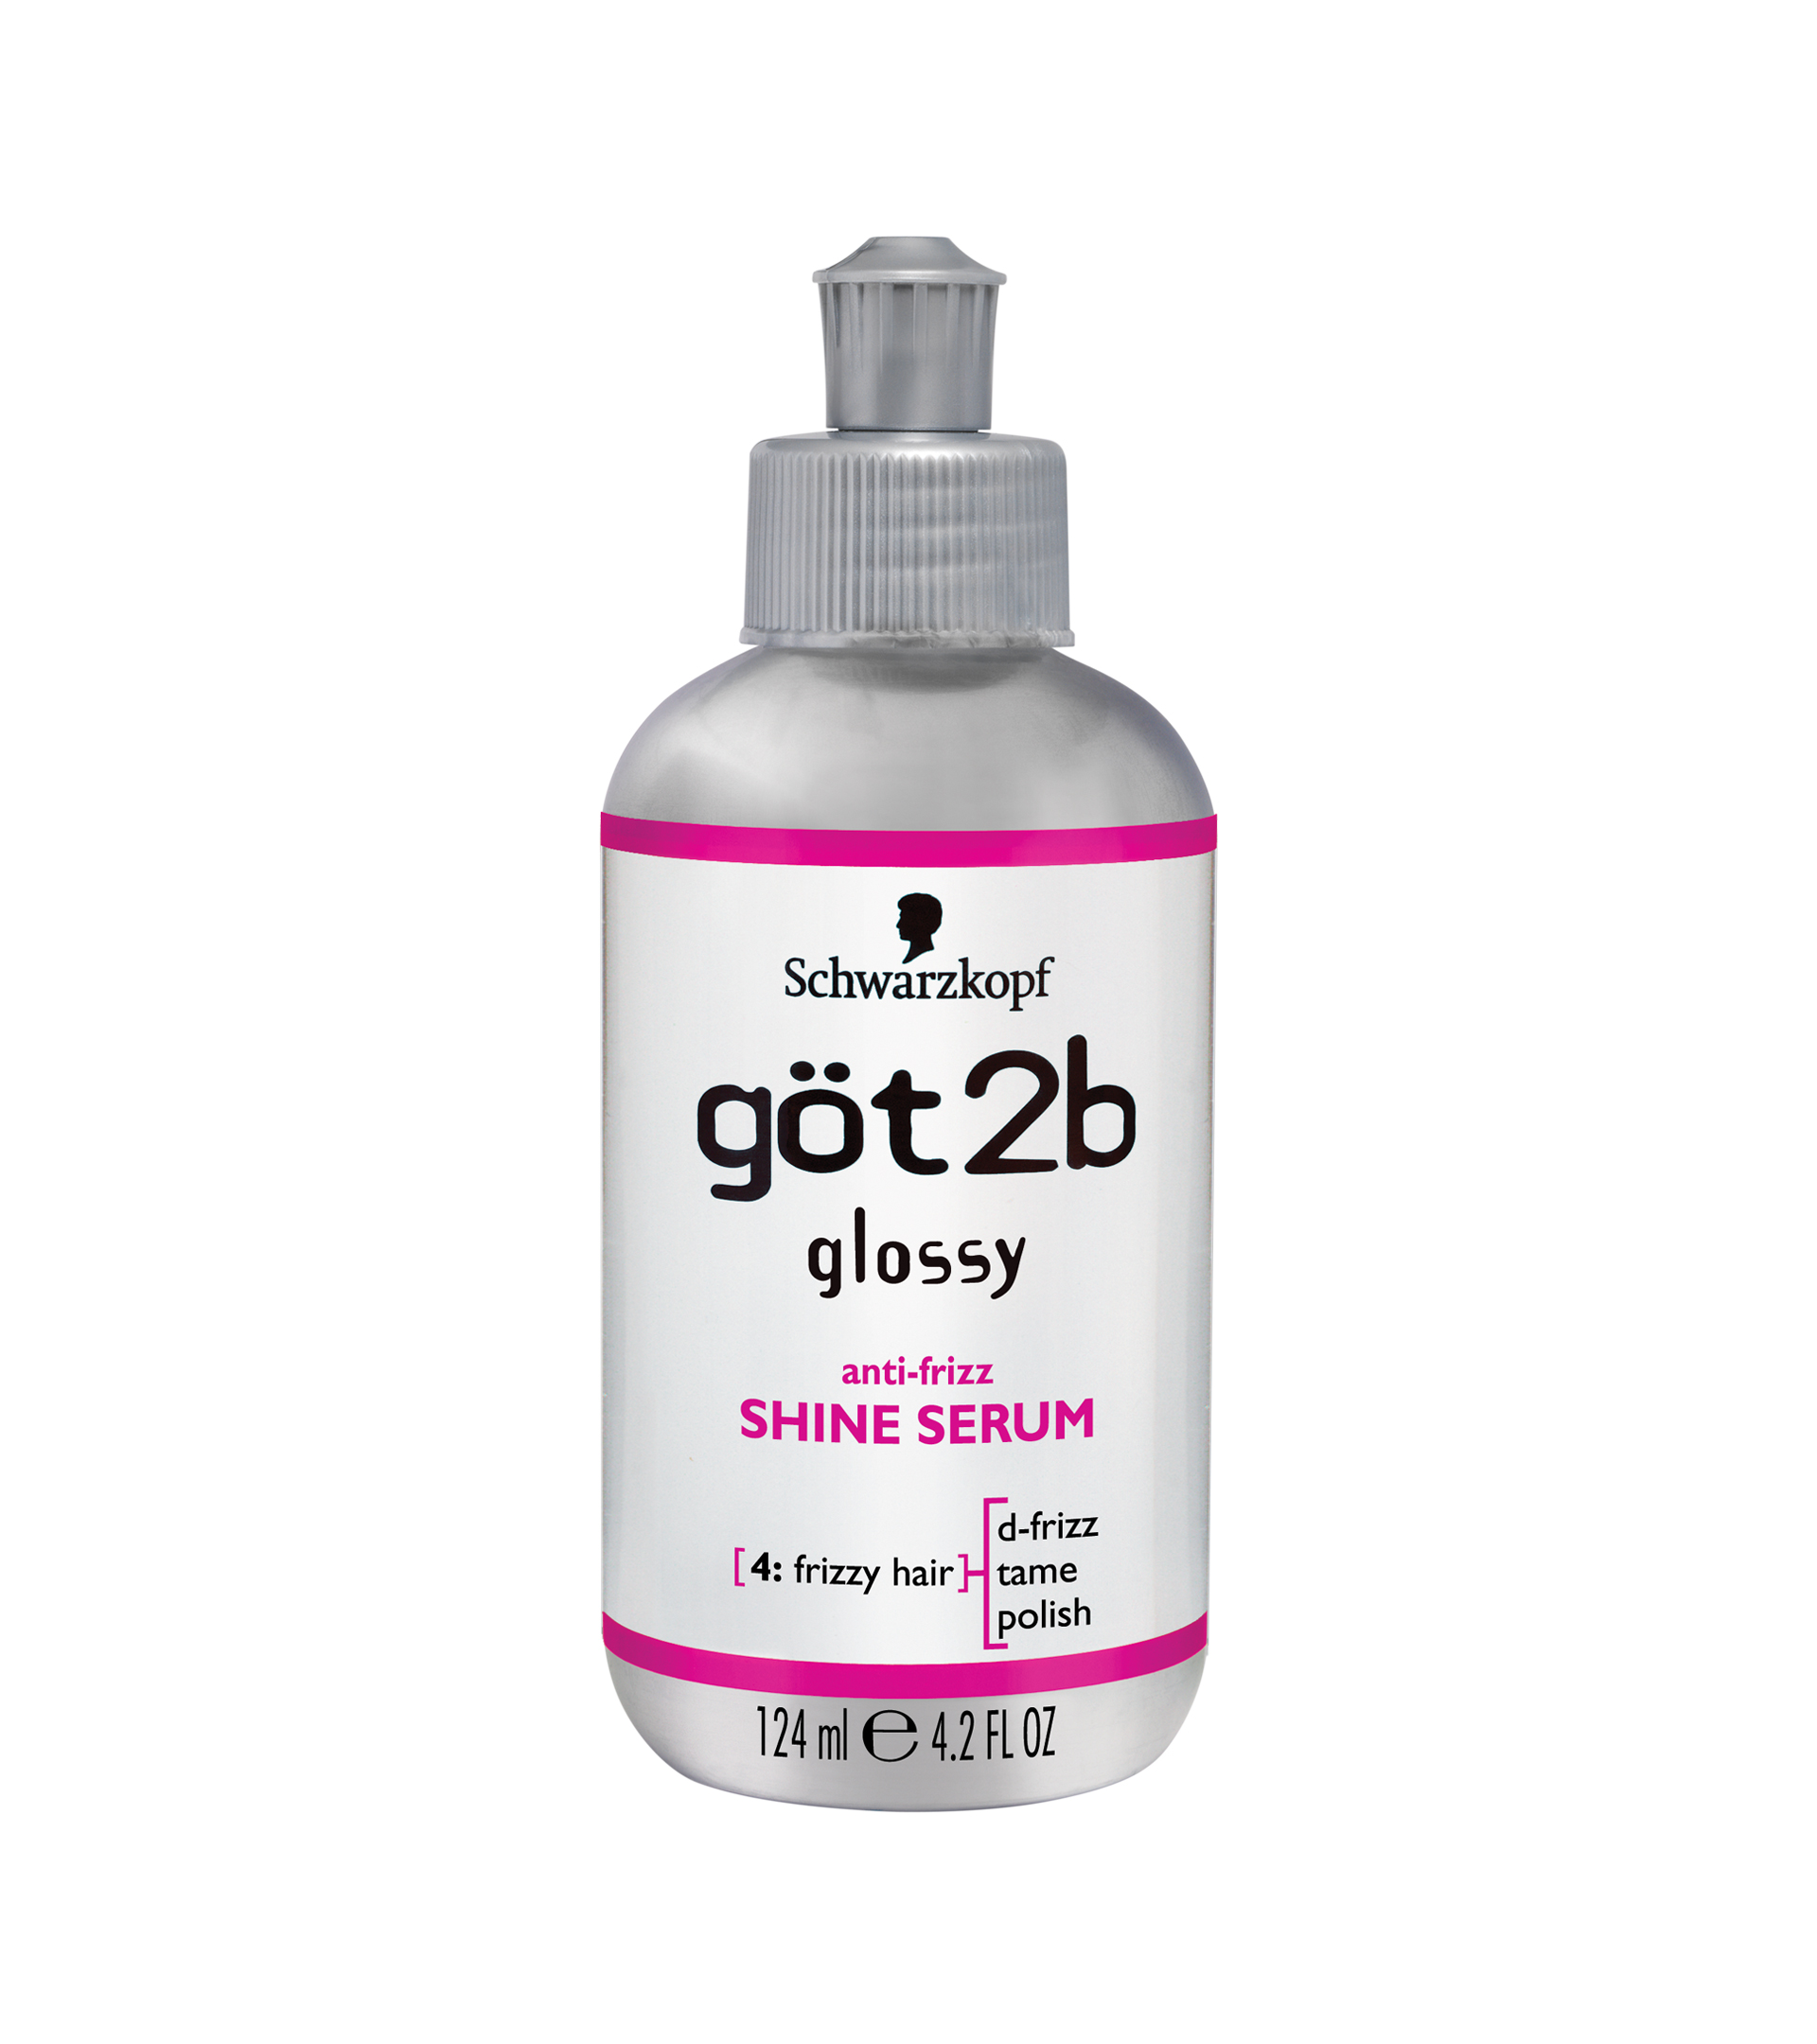 B-glossy body serum